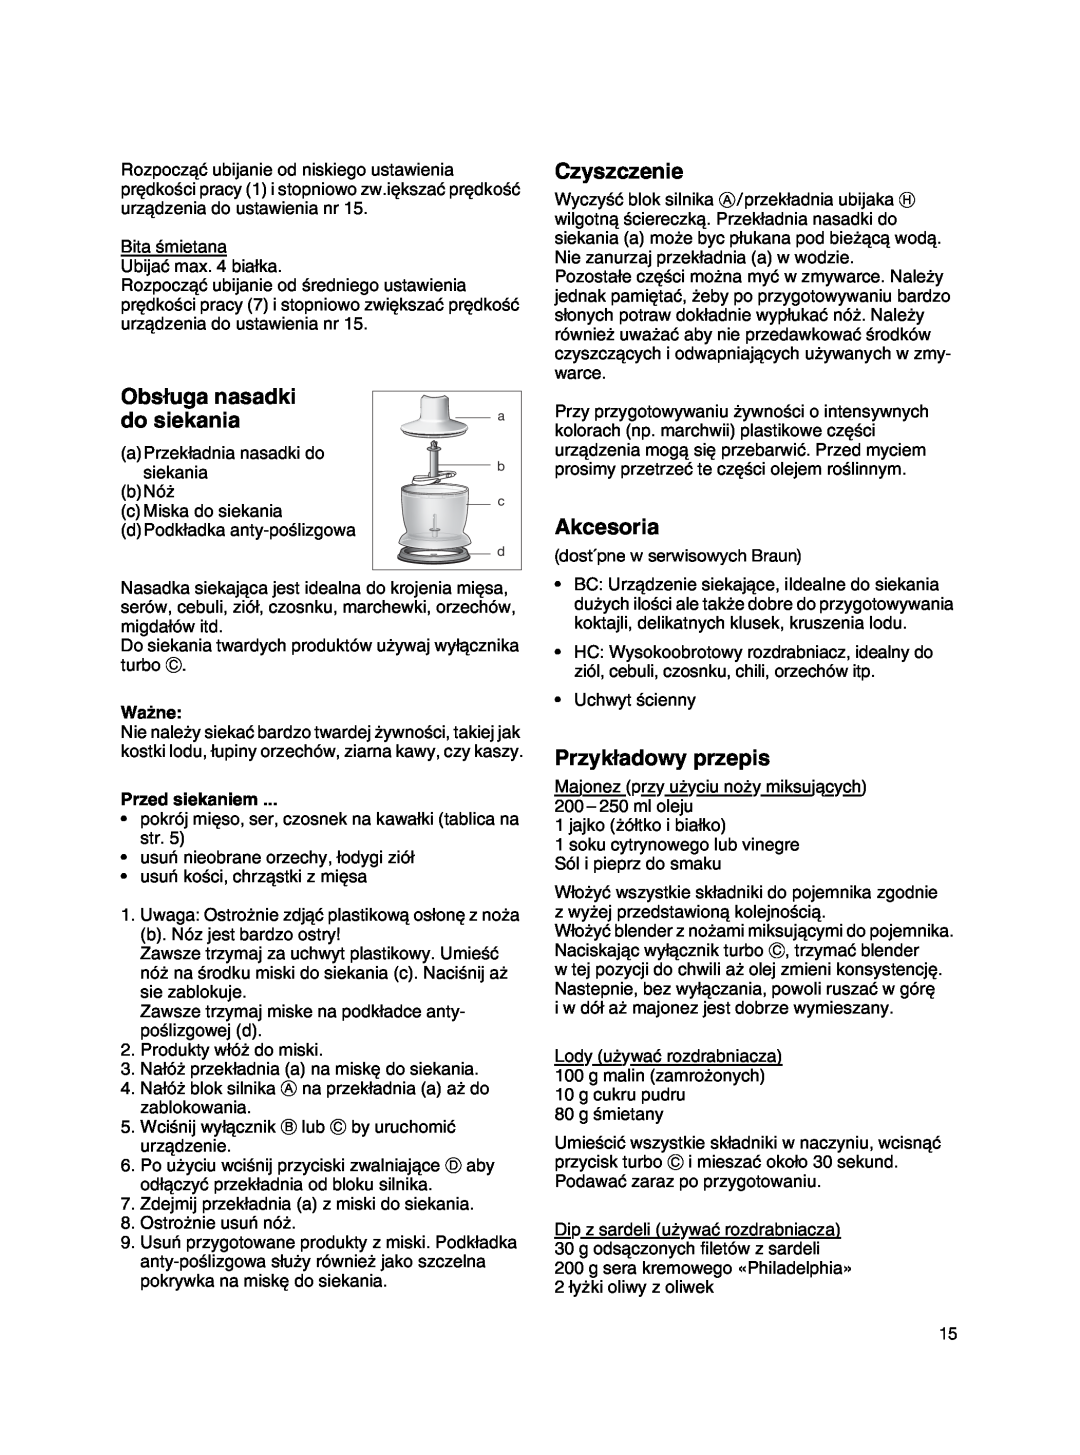 Braun MR 500 manual Obs∏uga nasadki, do siekania, Czyszczenie, Akcesoria, Przyk∏adowy przepis, Wa˝ne, Przed siekaniem 